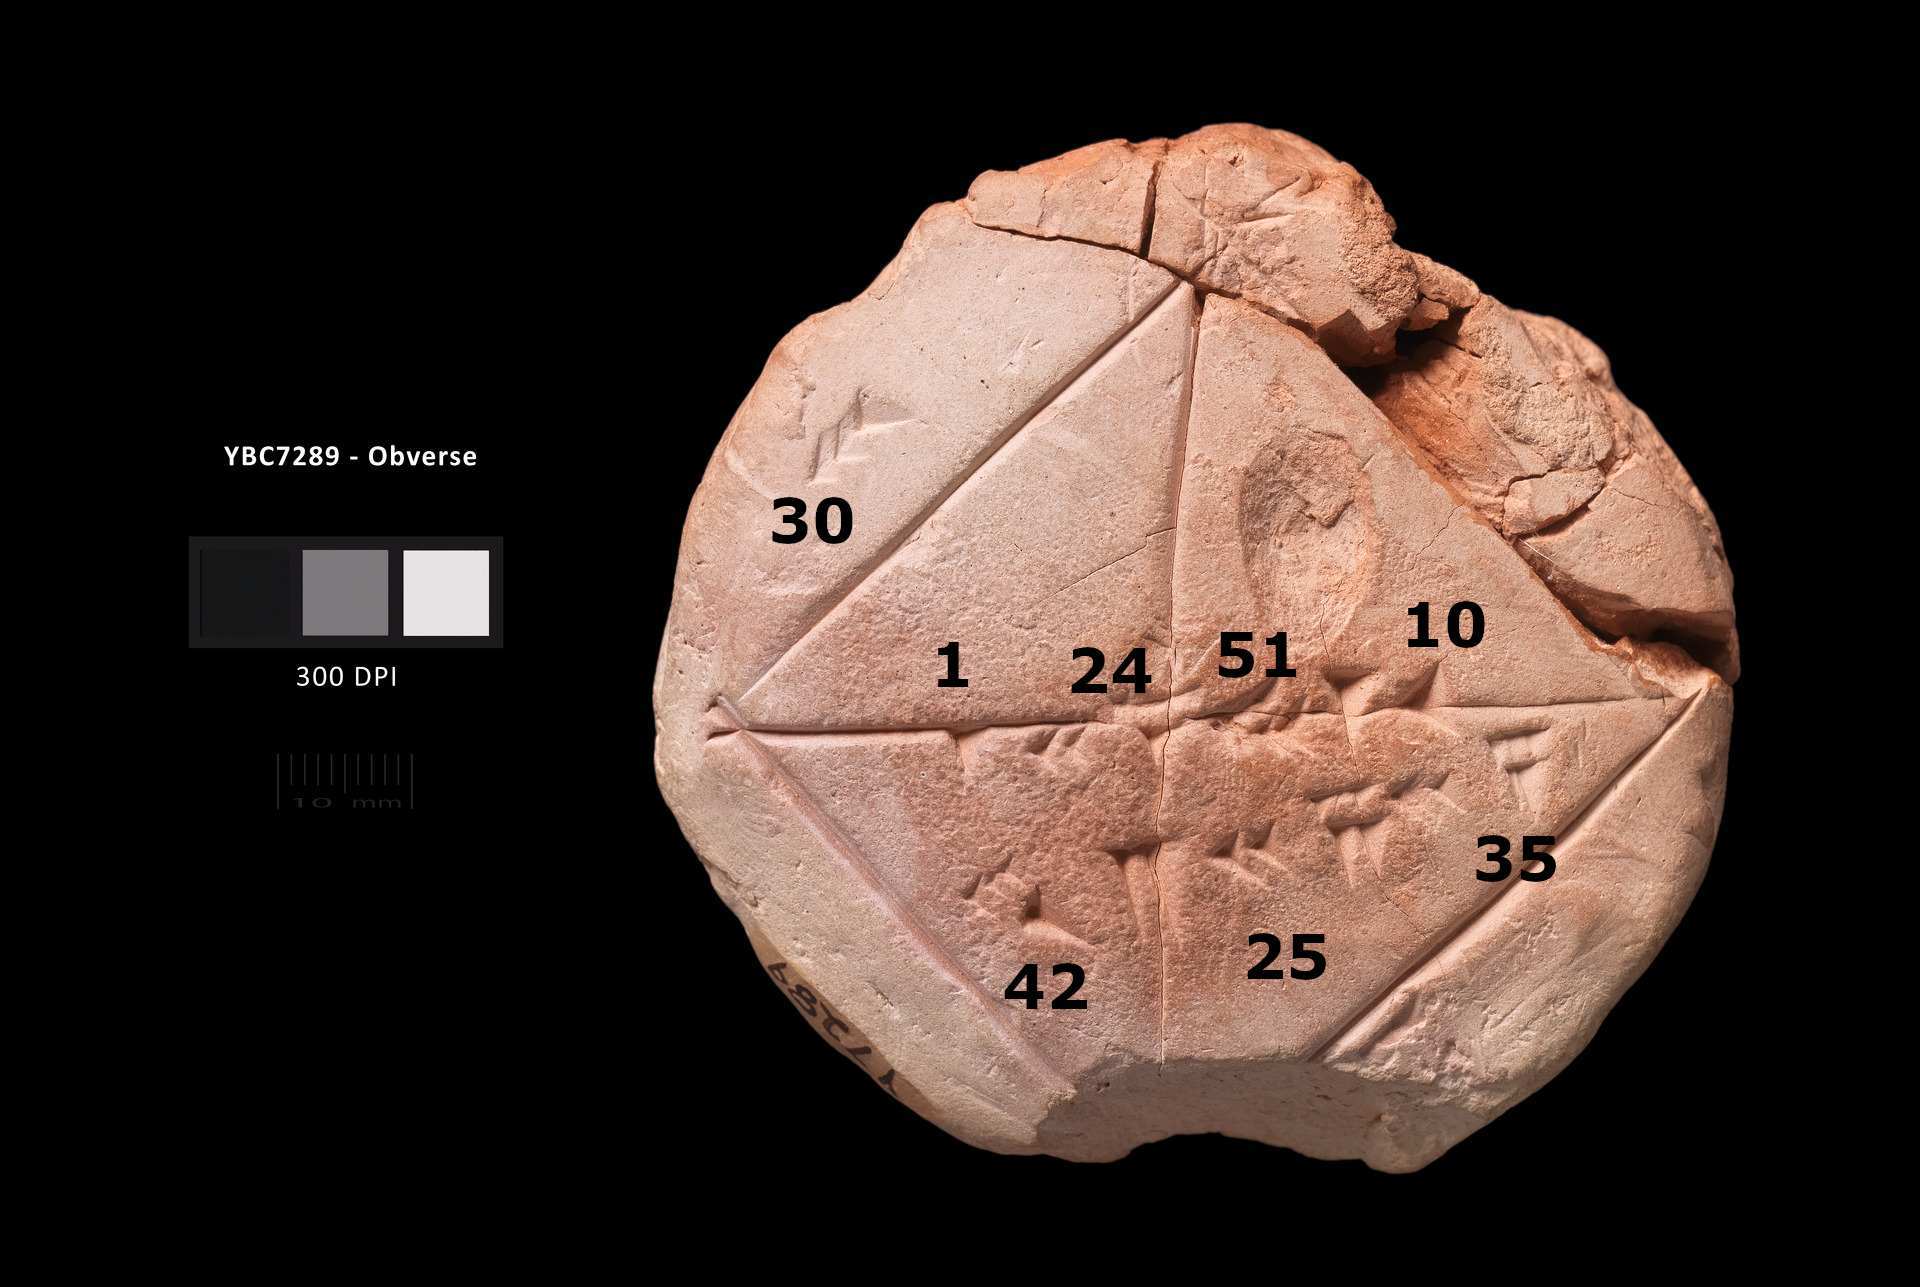 Yale Babylonian коллекциясының YBC 7289 планшетінің таңбаланған фотосуреті